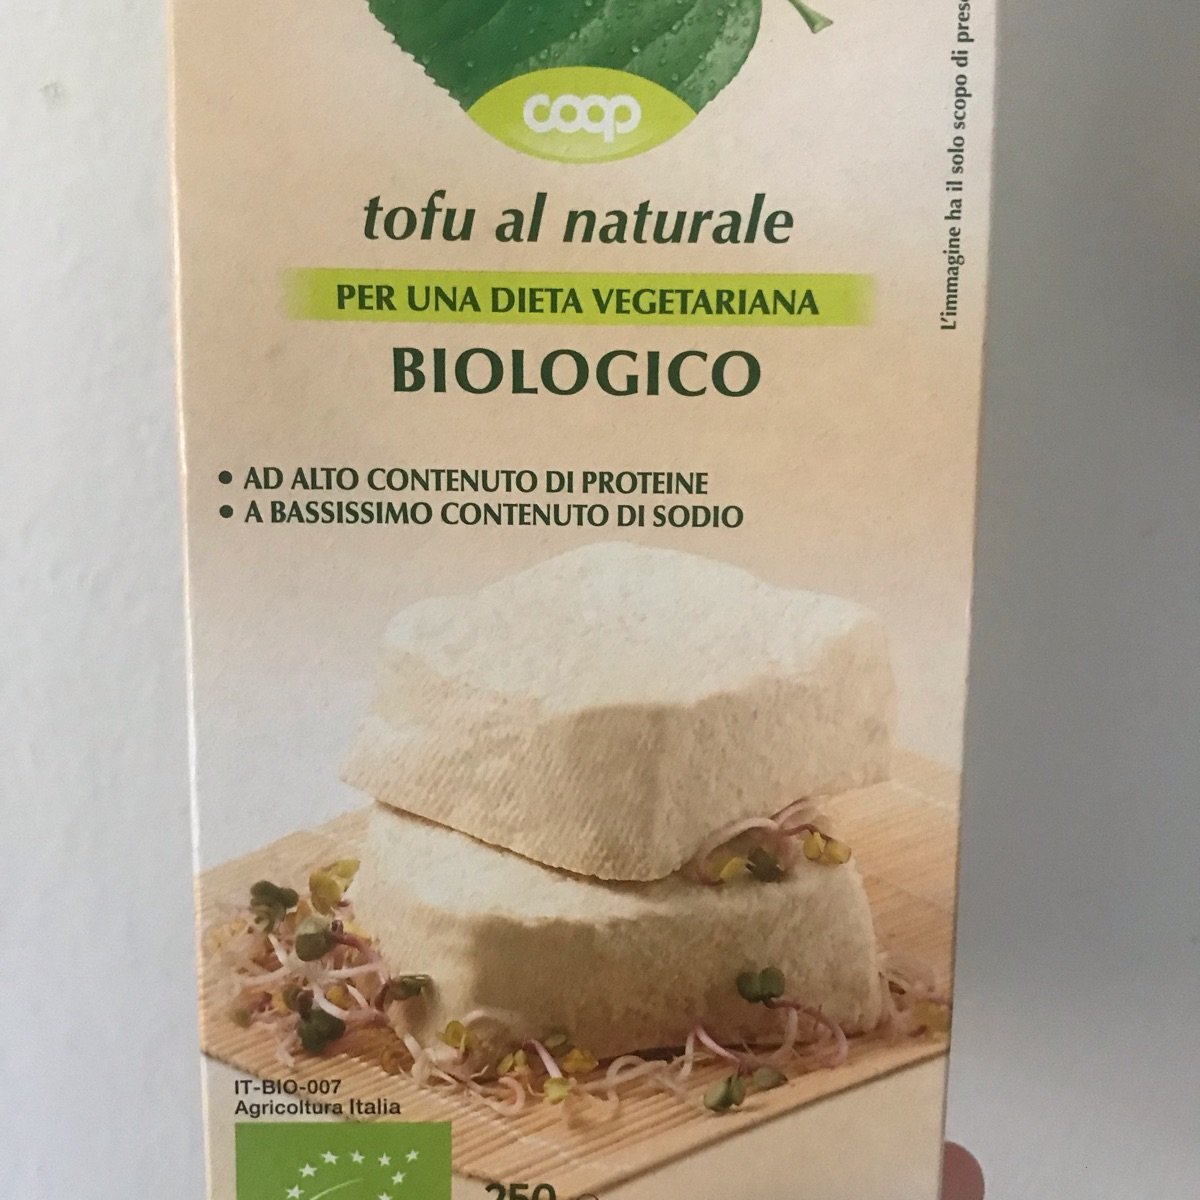 Natura Sì Tofu al naturale Reviews